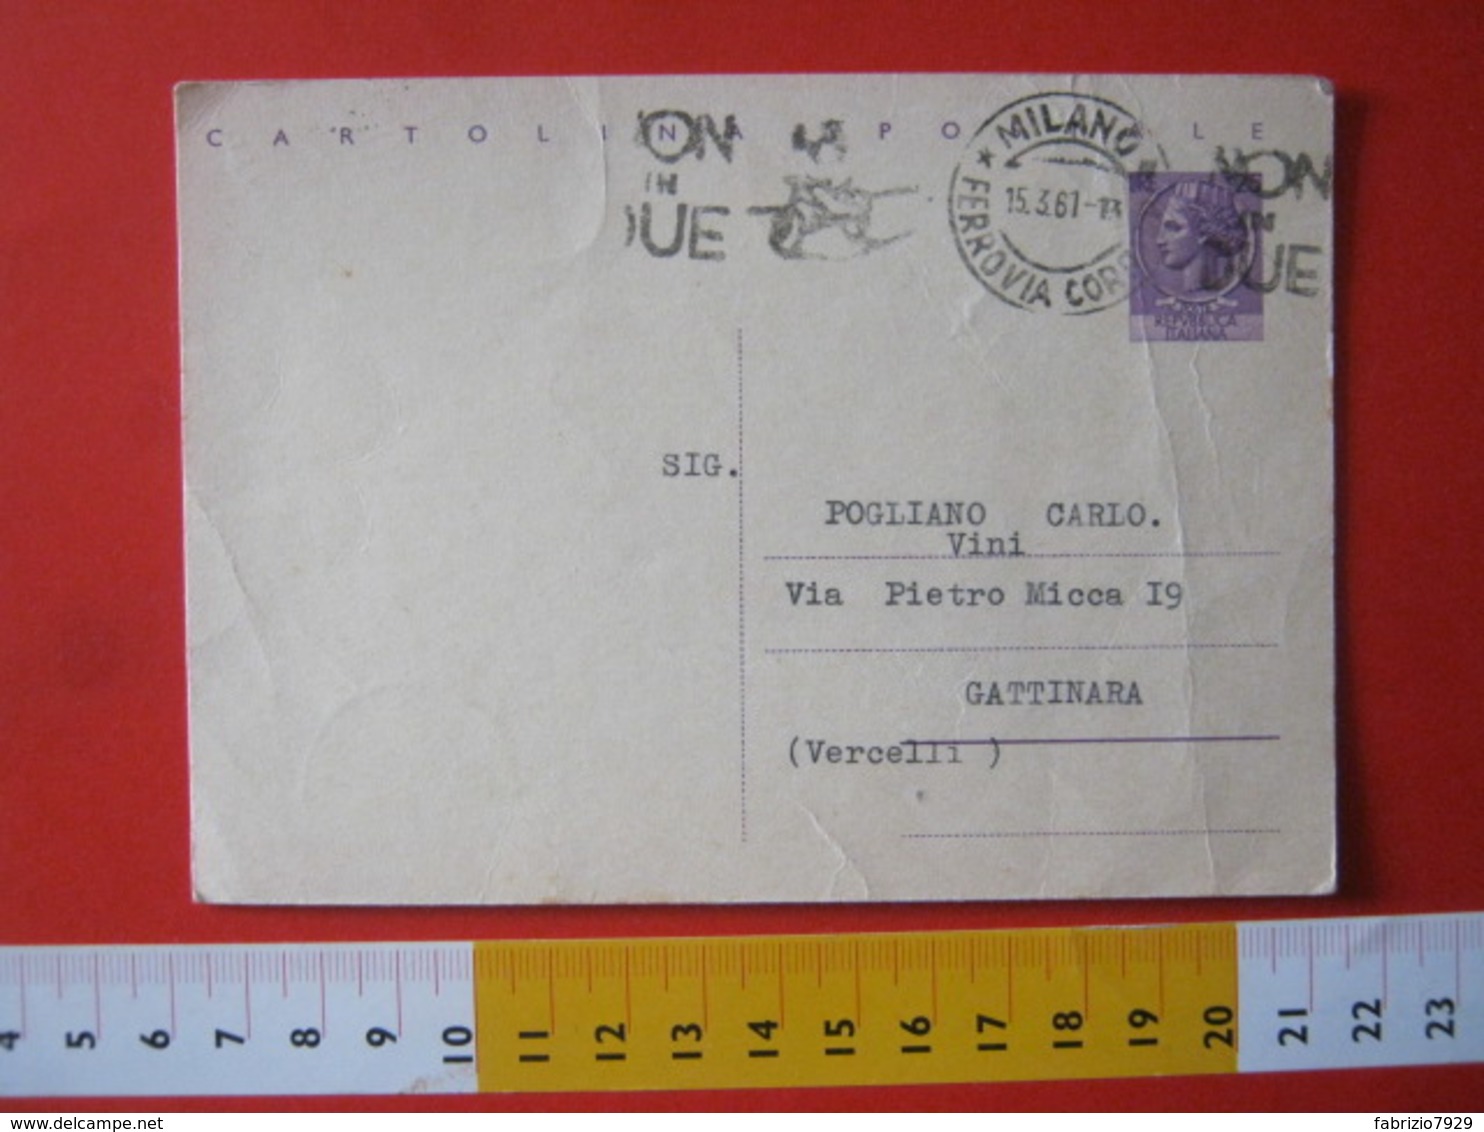 PC.4 ITALIA CARTOLINA POSTALE - 1956 SIRACUSANA £ 25 SCRITTA ALTO DA MILANO 1961 Targhetta NON IN DUE BICICLETTA BIKE - Interi Postali